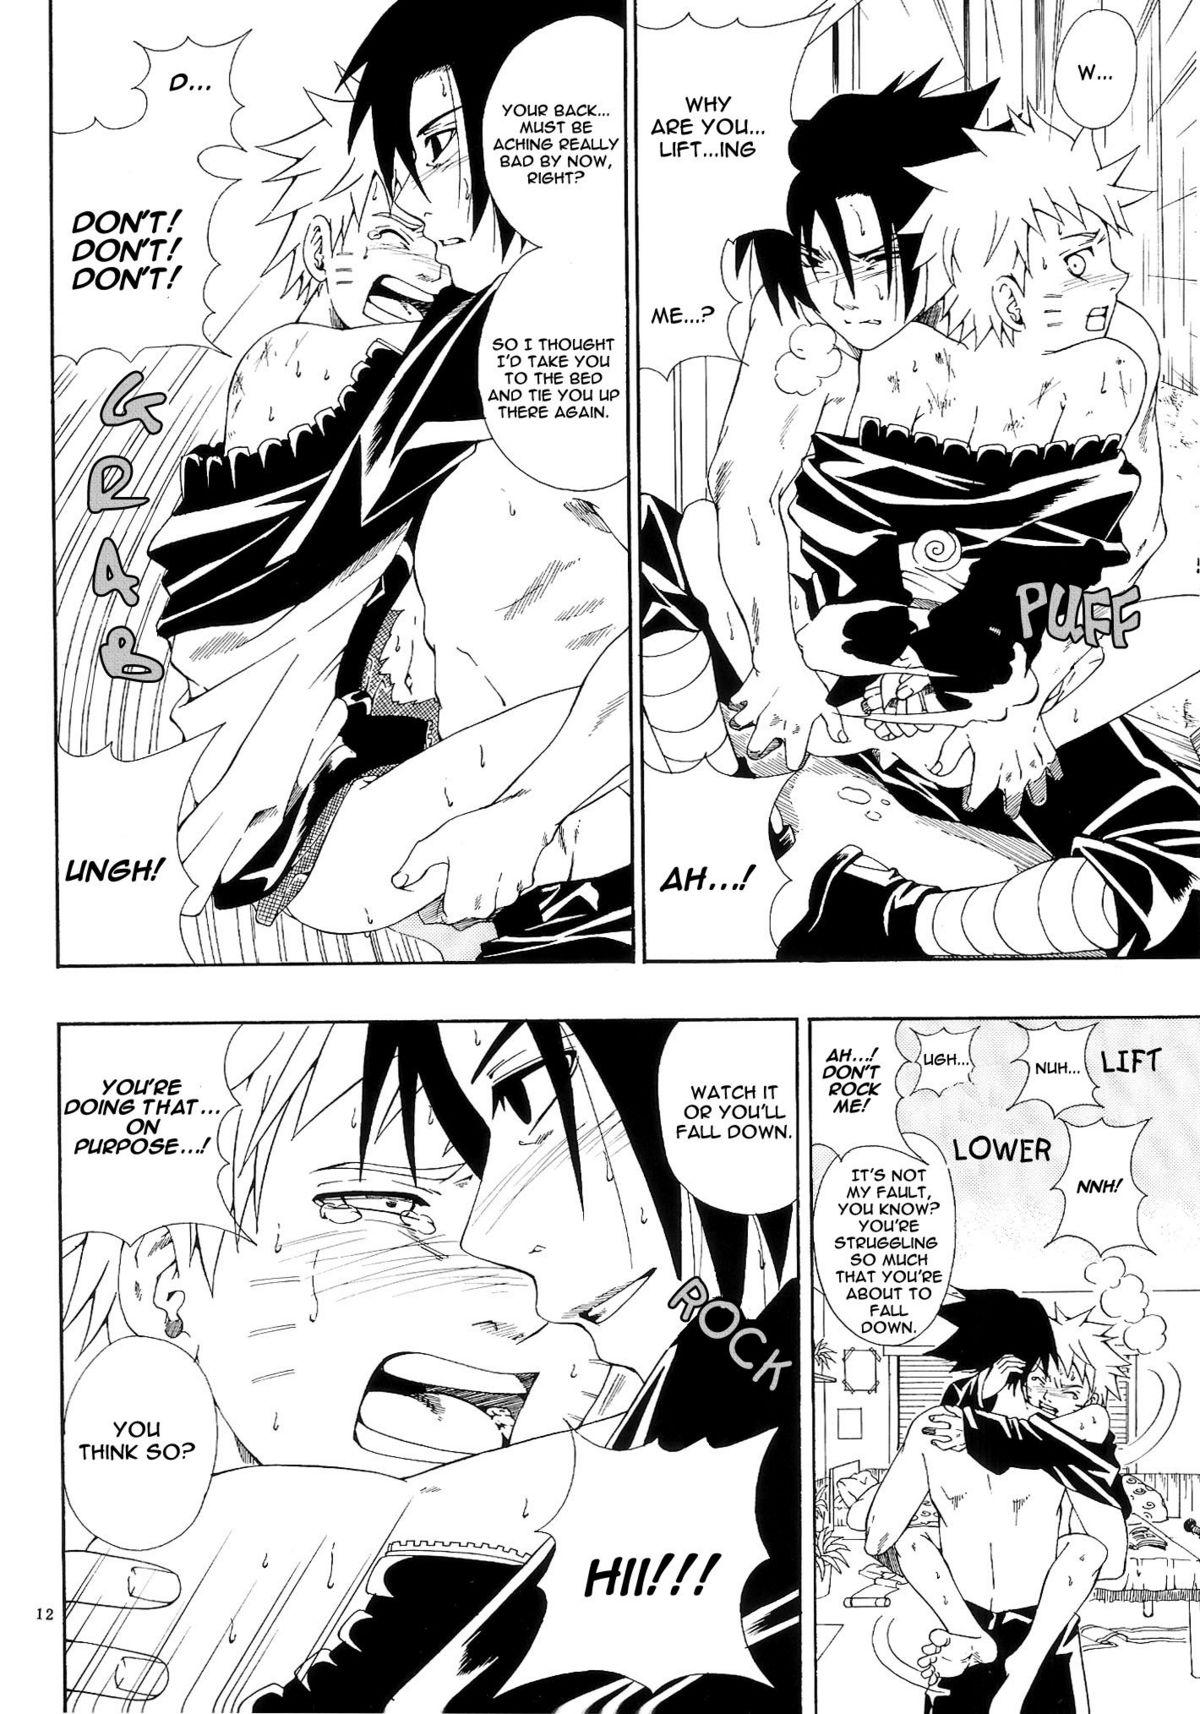 ERO ERO²: Volume 1.5  (NARUTO) [Sasuke X Naruto] YAOI -ENG- 10